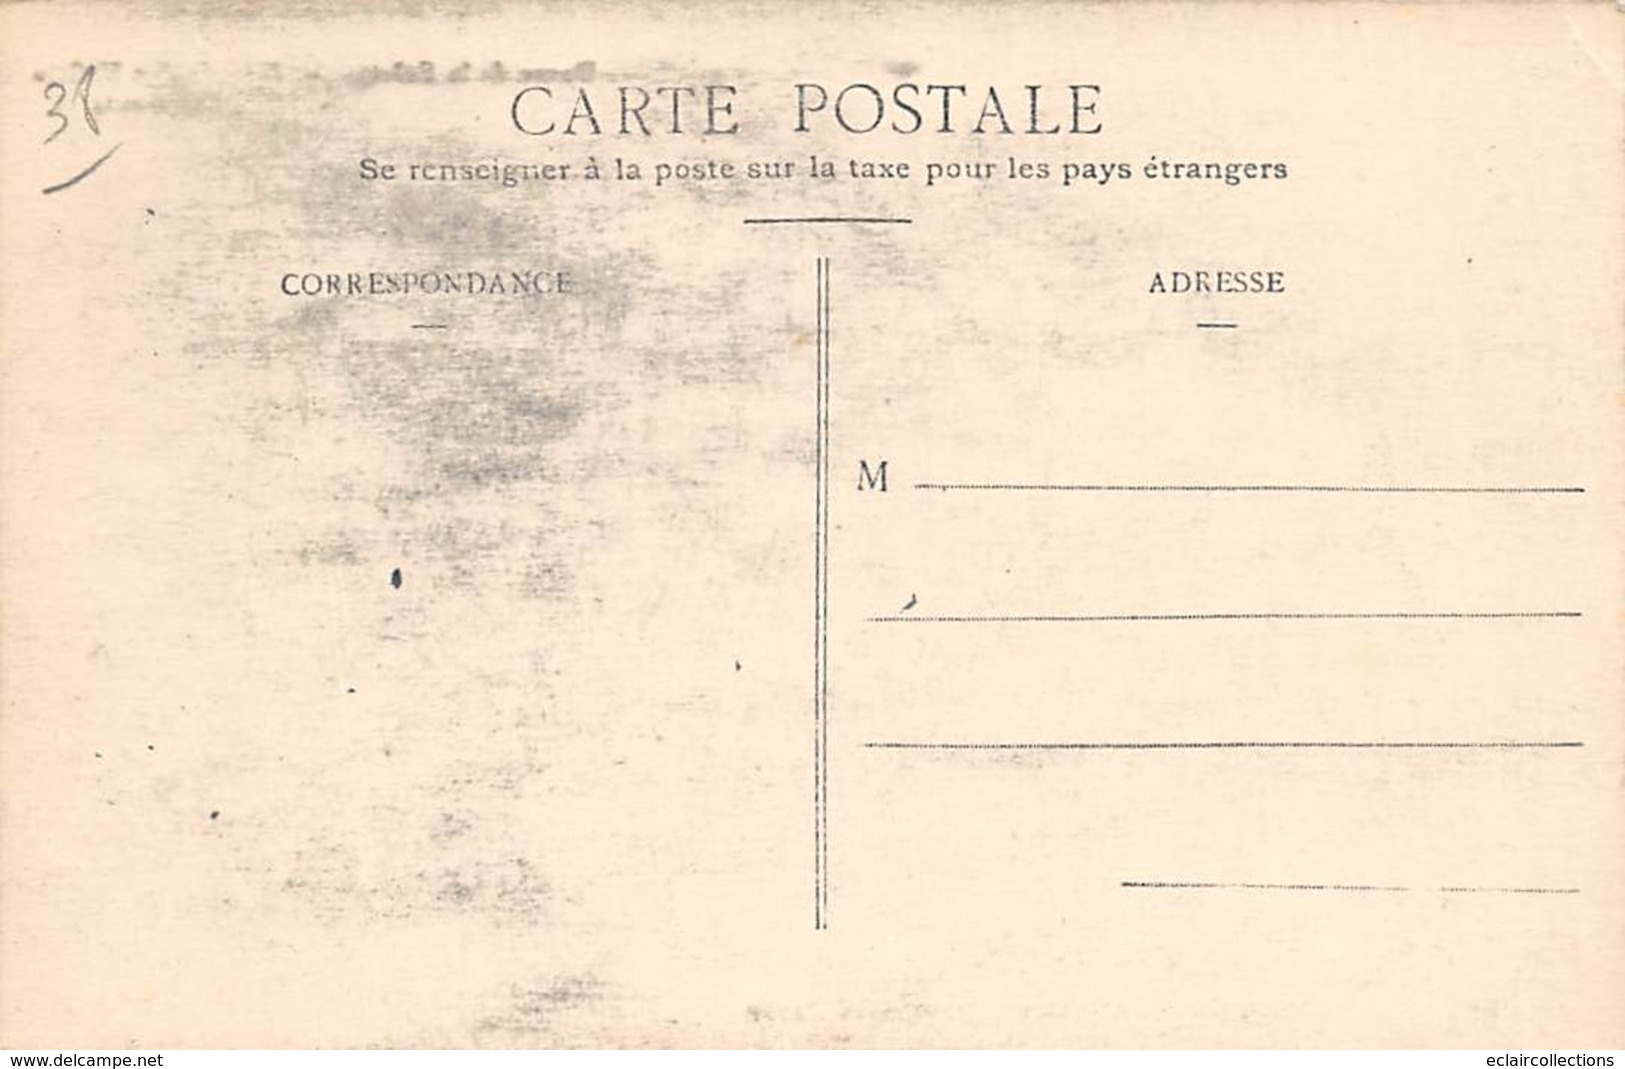 Corps      38      Lot de 6 cartes de Pèlerinage a Notre Dame de La Salette     (Voir scan)